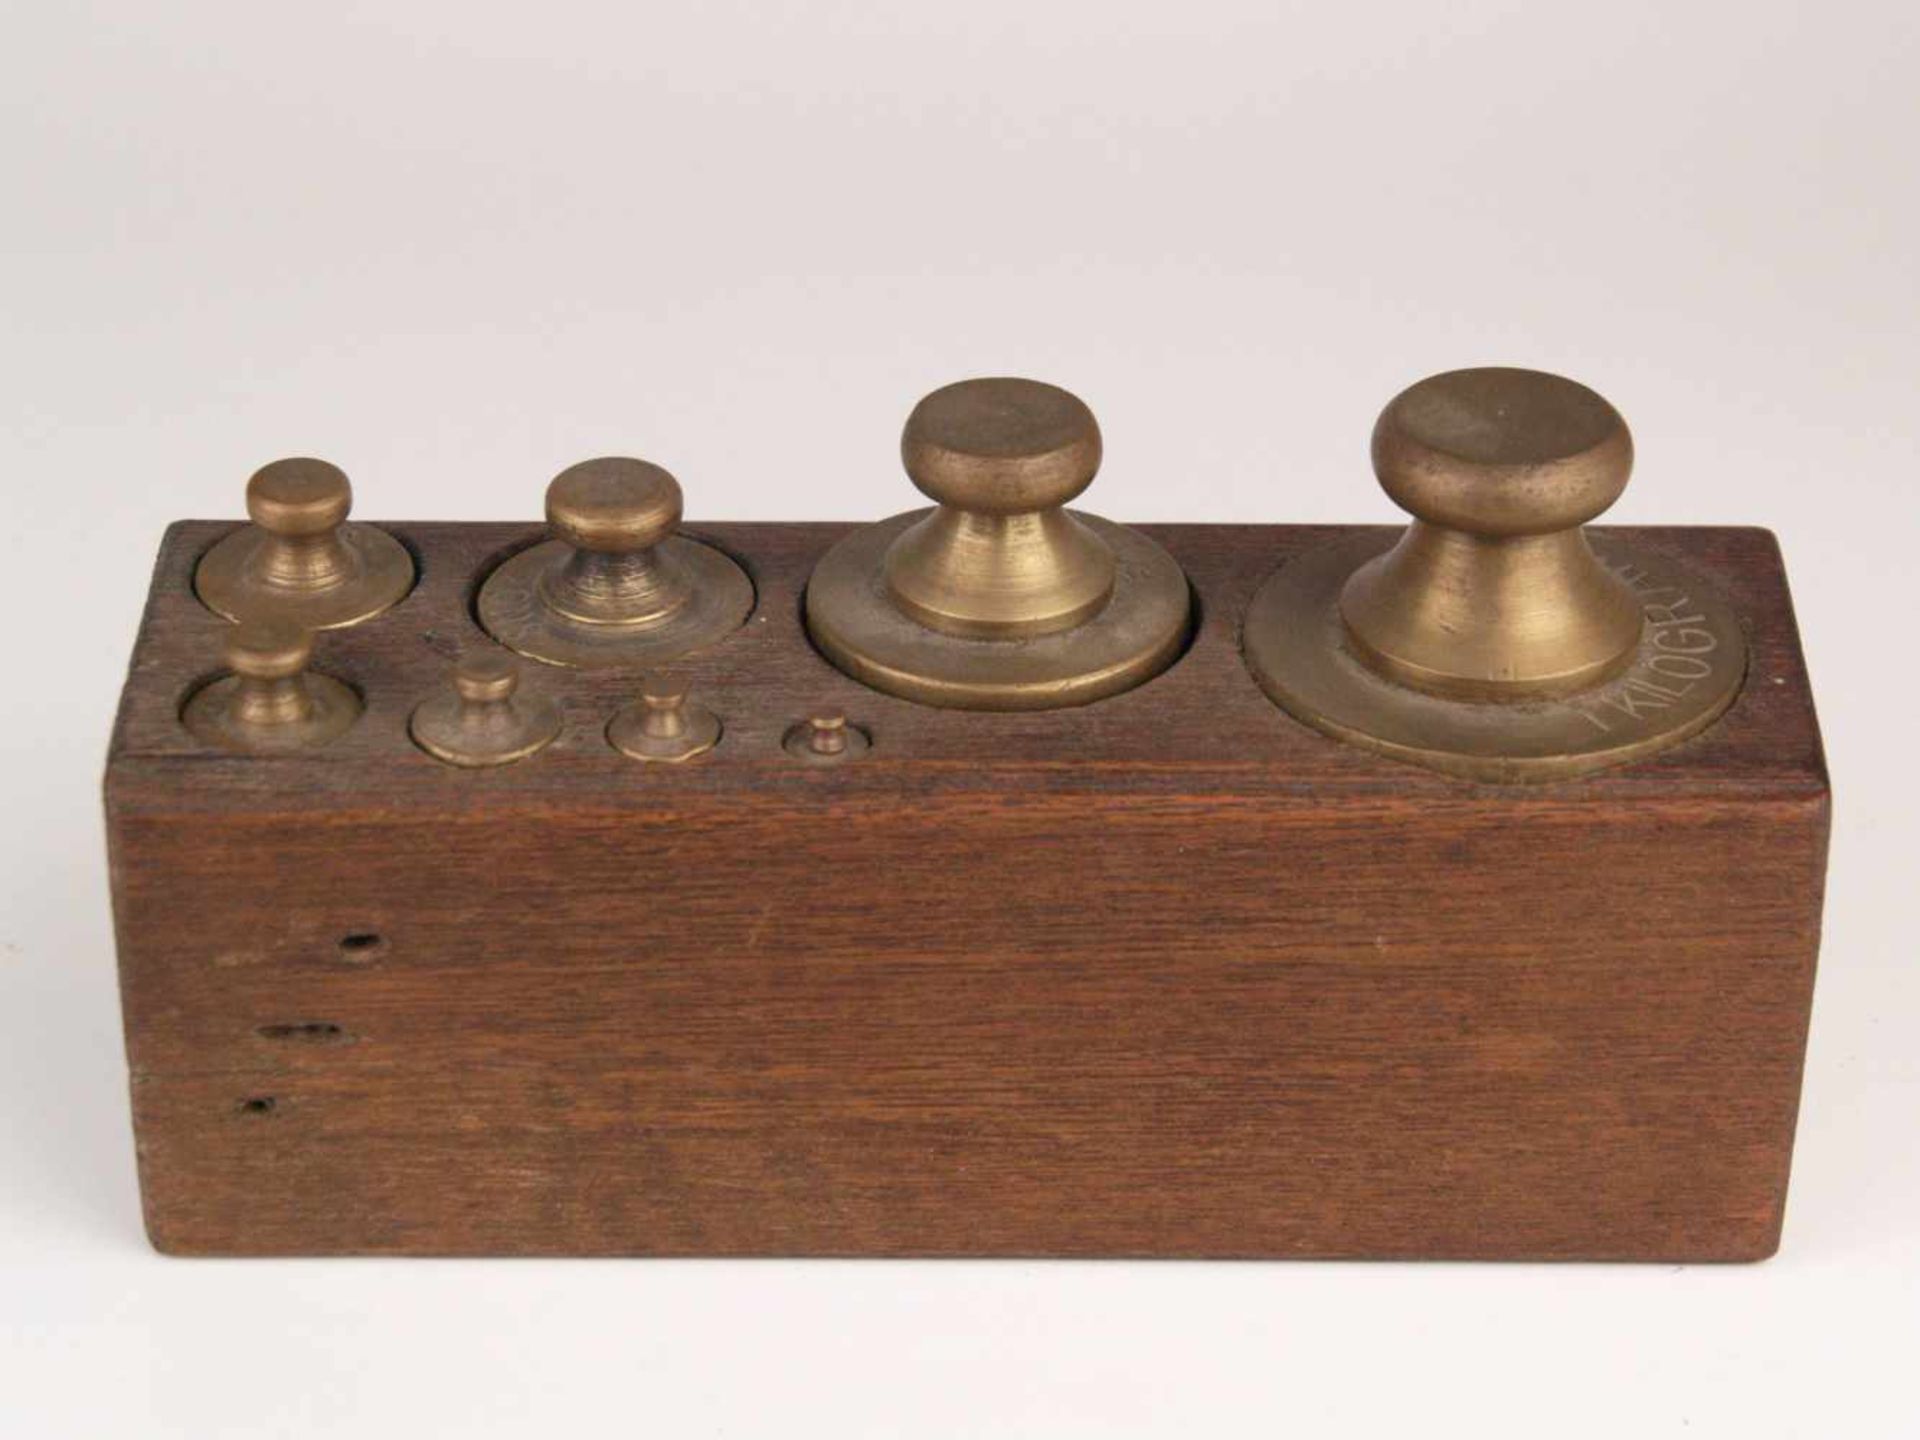 Acht Gewichte - Holzblock mit 8 Gewichten, Messing, von 5g bis 1 kg, zylindrischer Korpus mit Knauf,